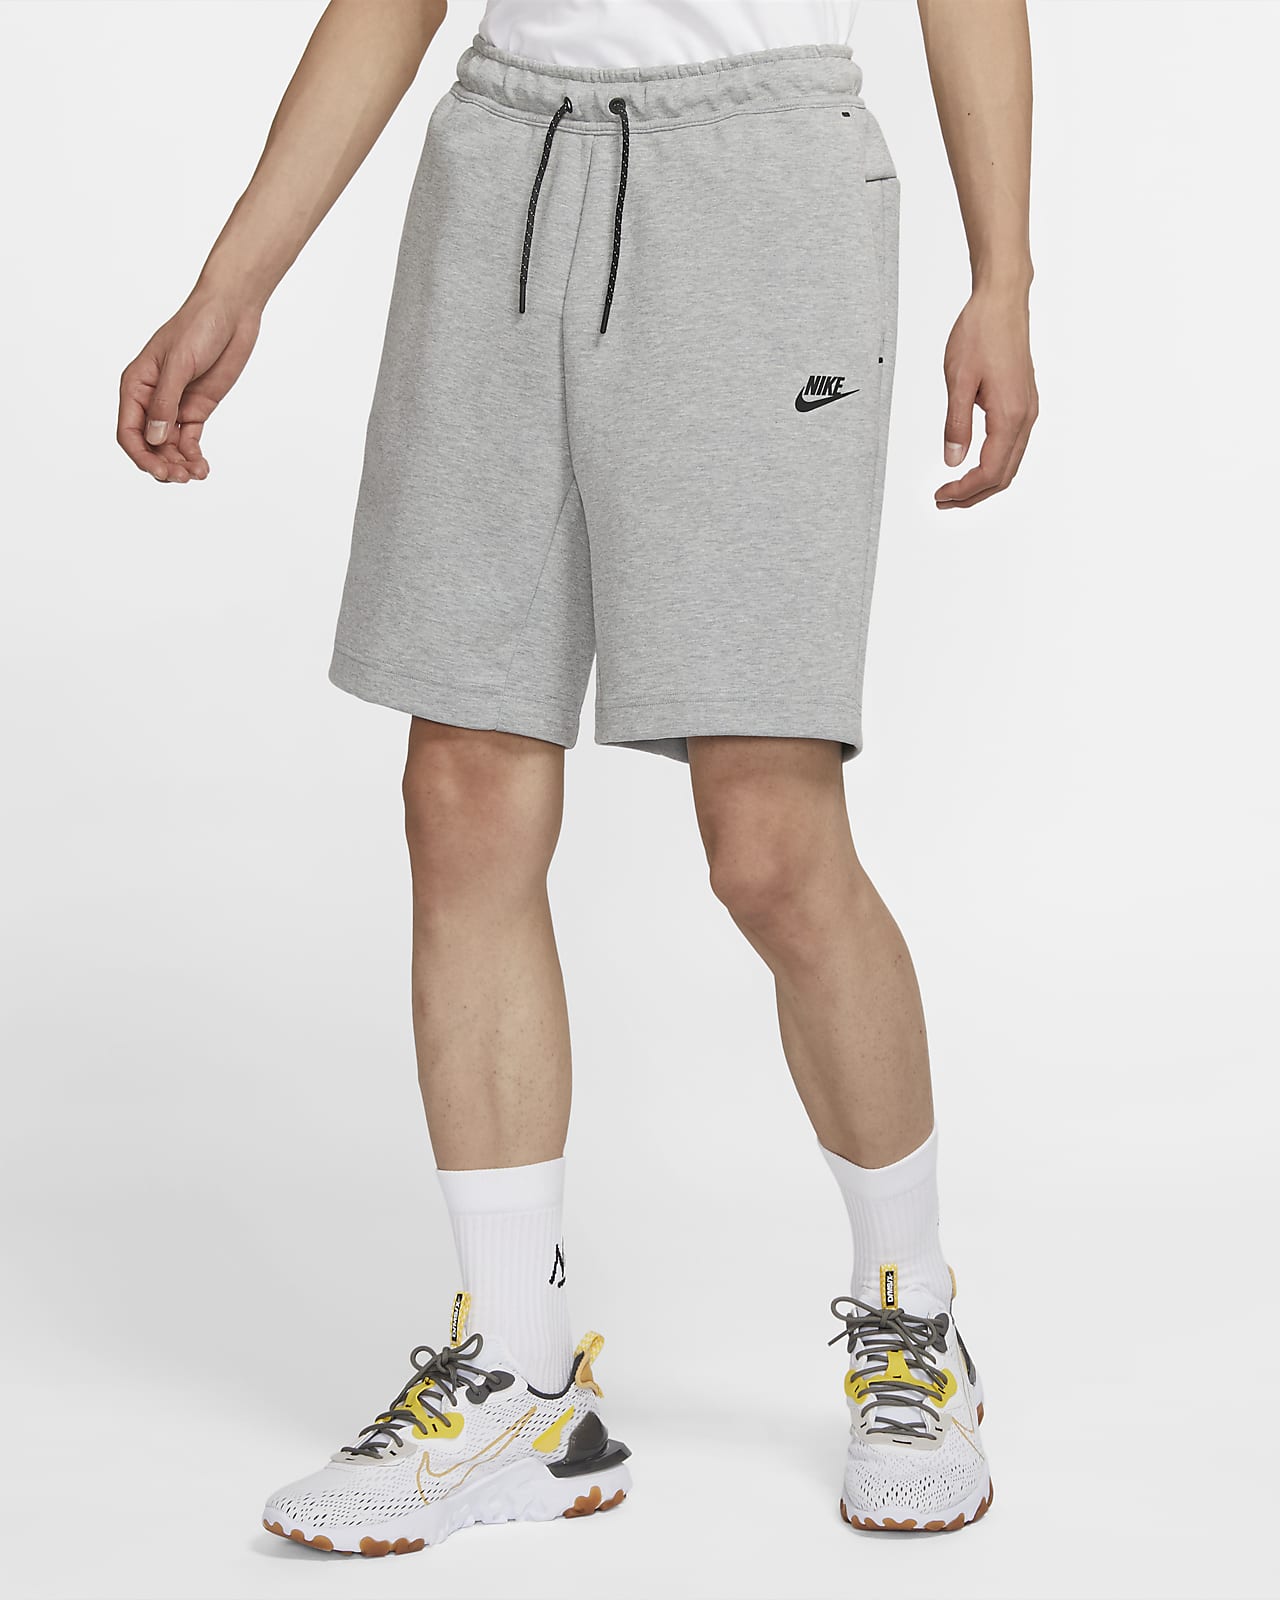 men's shorts nike sportswear